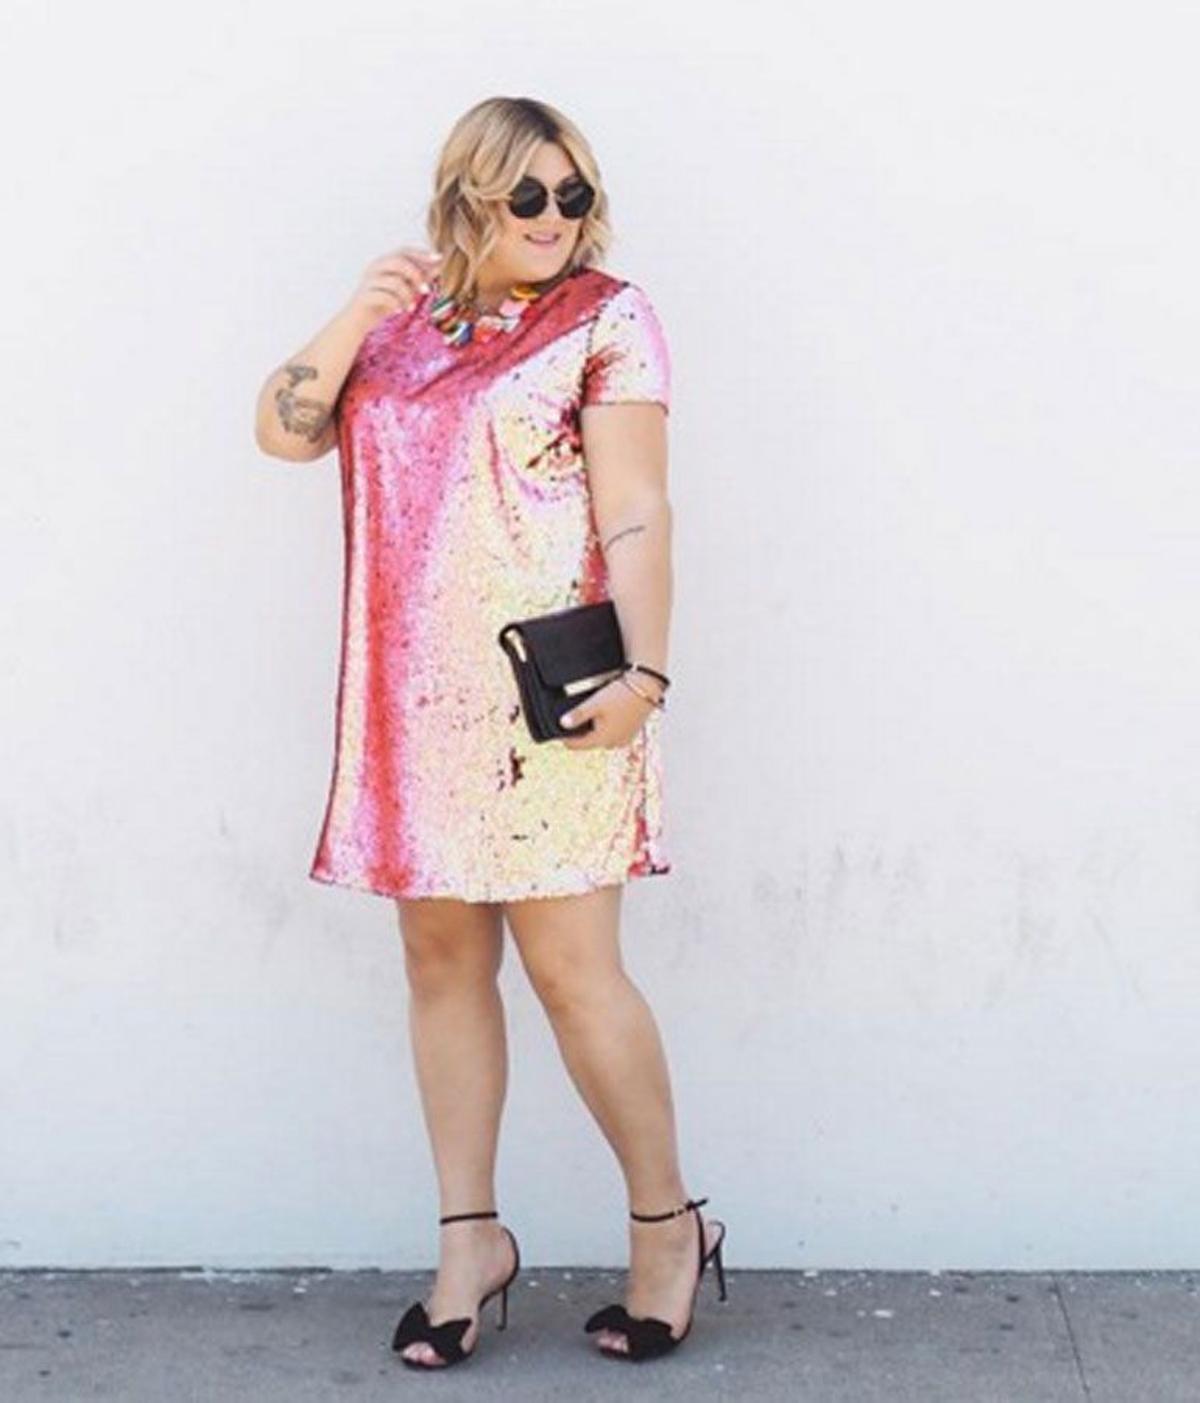 Nicolette Mason con mini vestido glitter